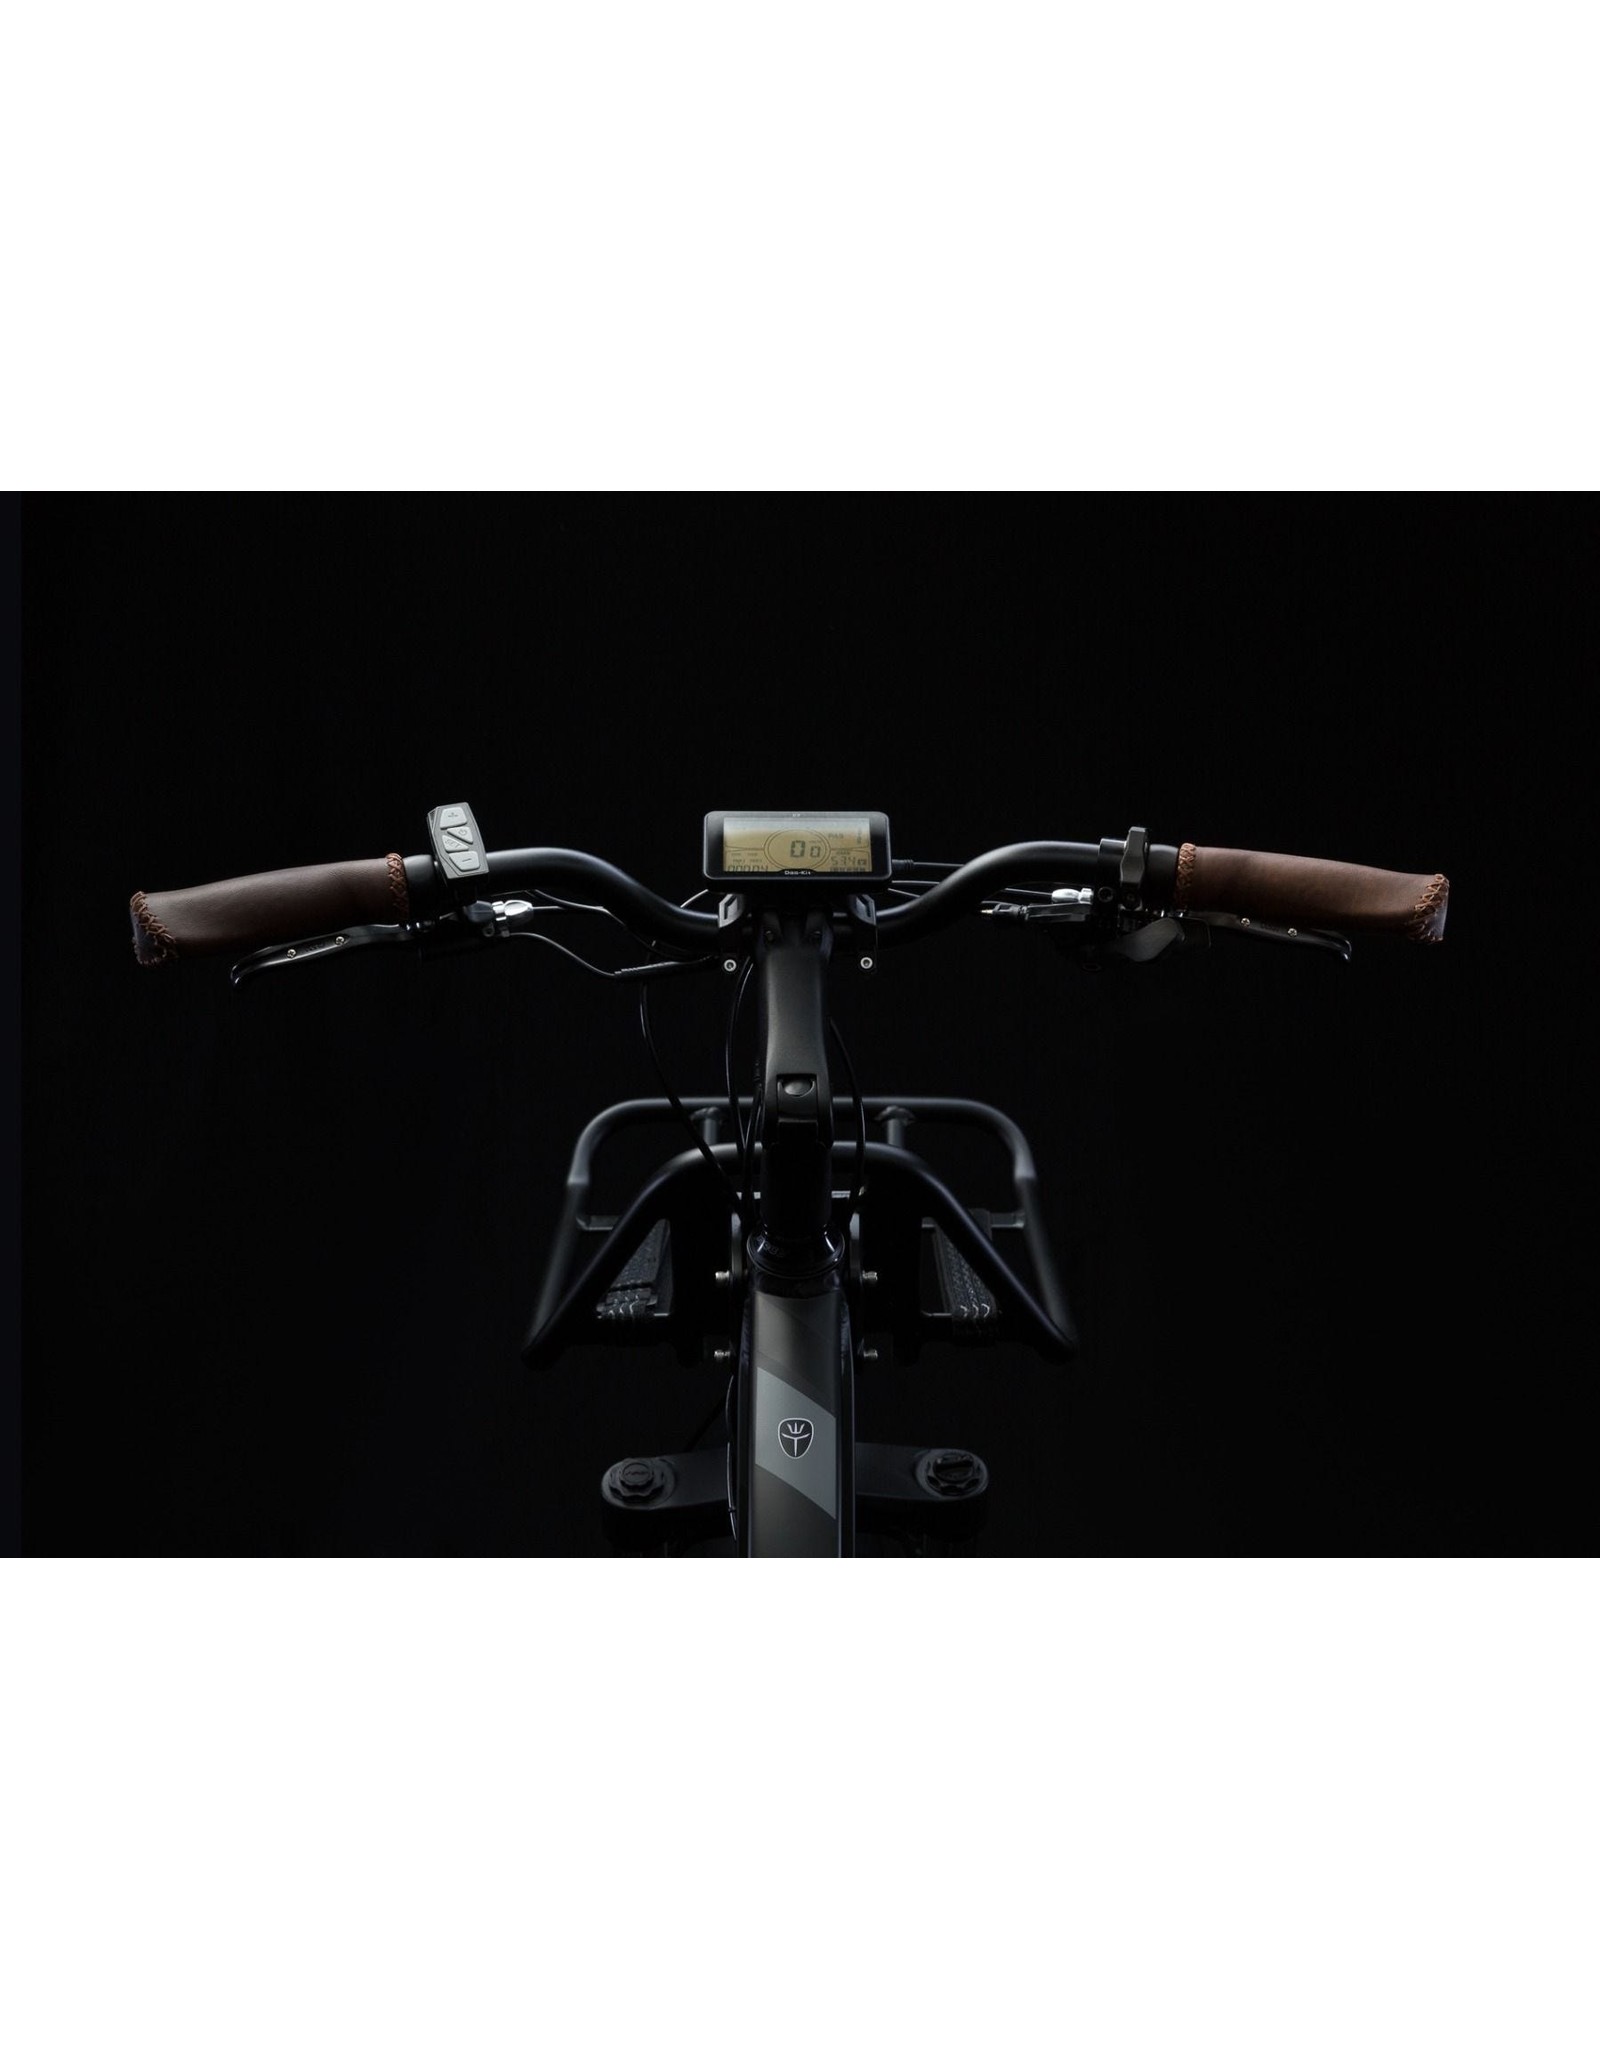 LEON CYCLE ET.Cycle T720 Fat Bike électrique Black 46CM